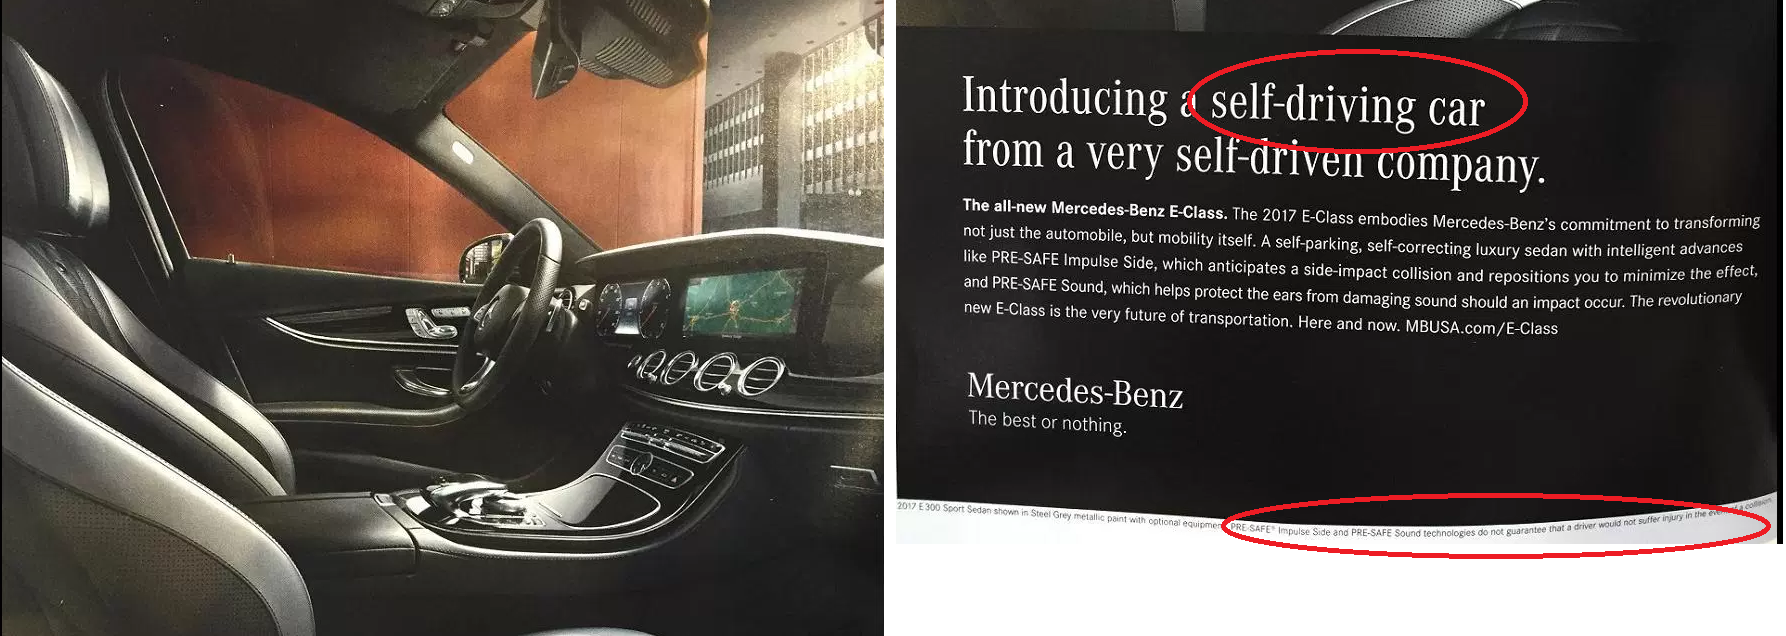 Mercedes advert